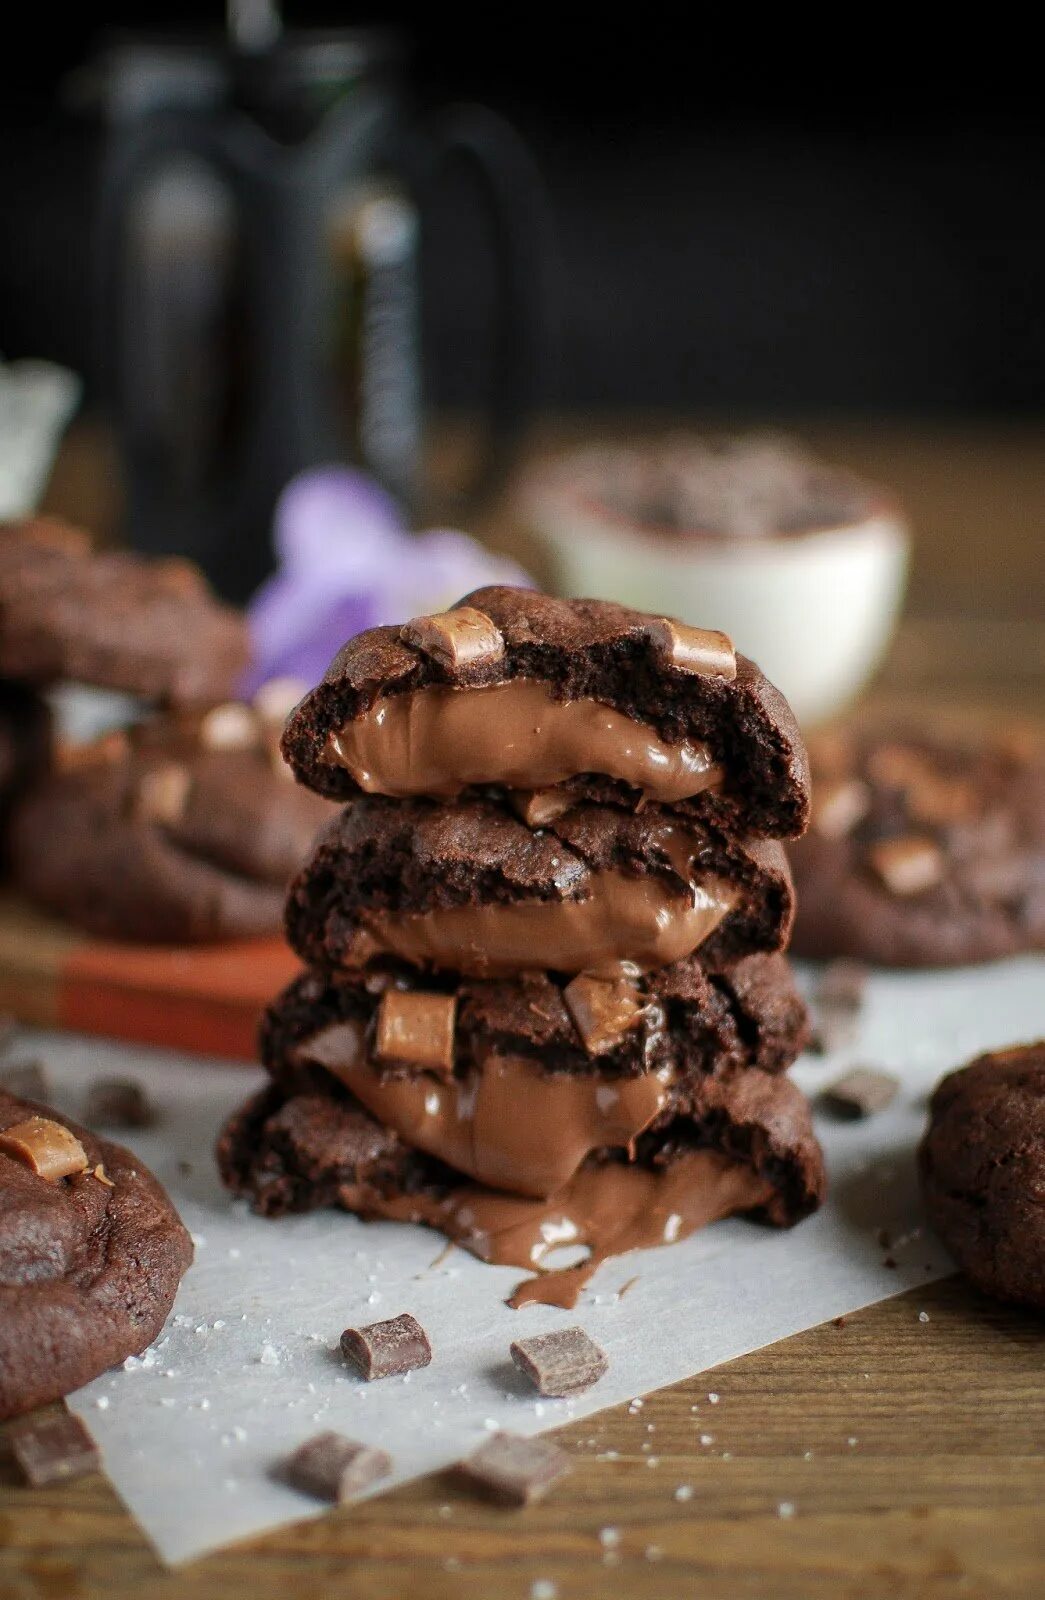 Шоколад внутри. Шоколадное печенье. Печеньки с шоколадом. Шоколадное печенье с шоколадом. Шоколадное печенье с шоколадом внутри.